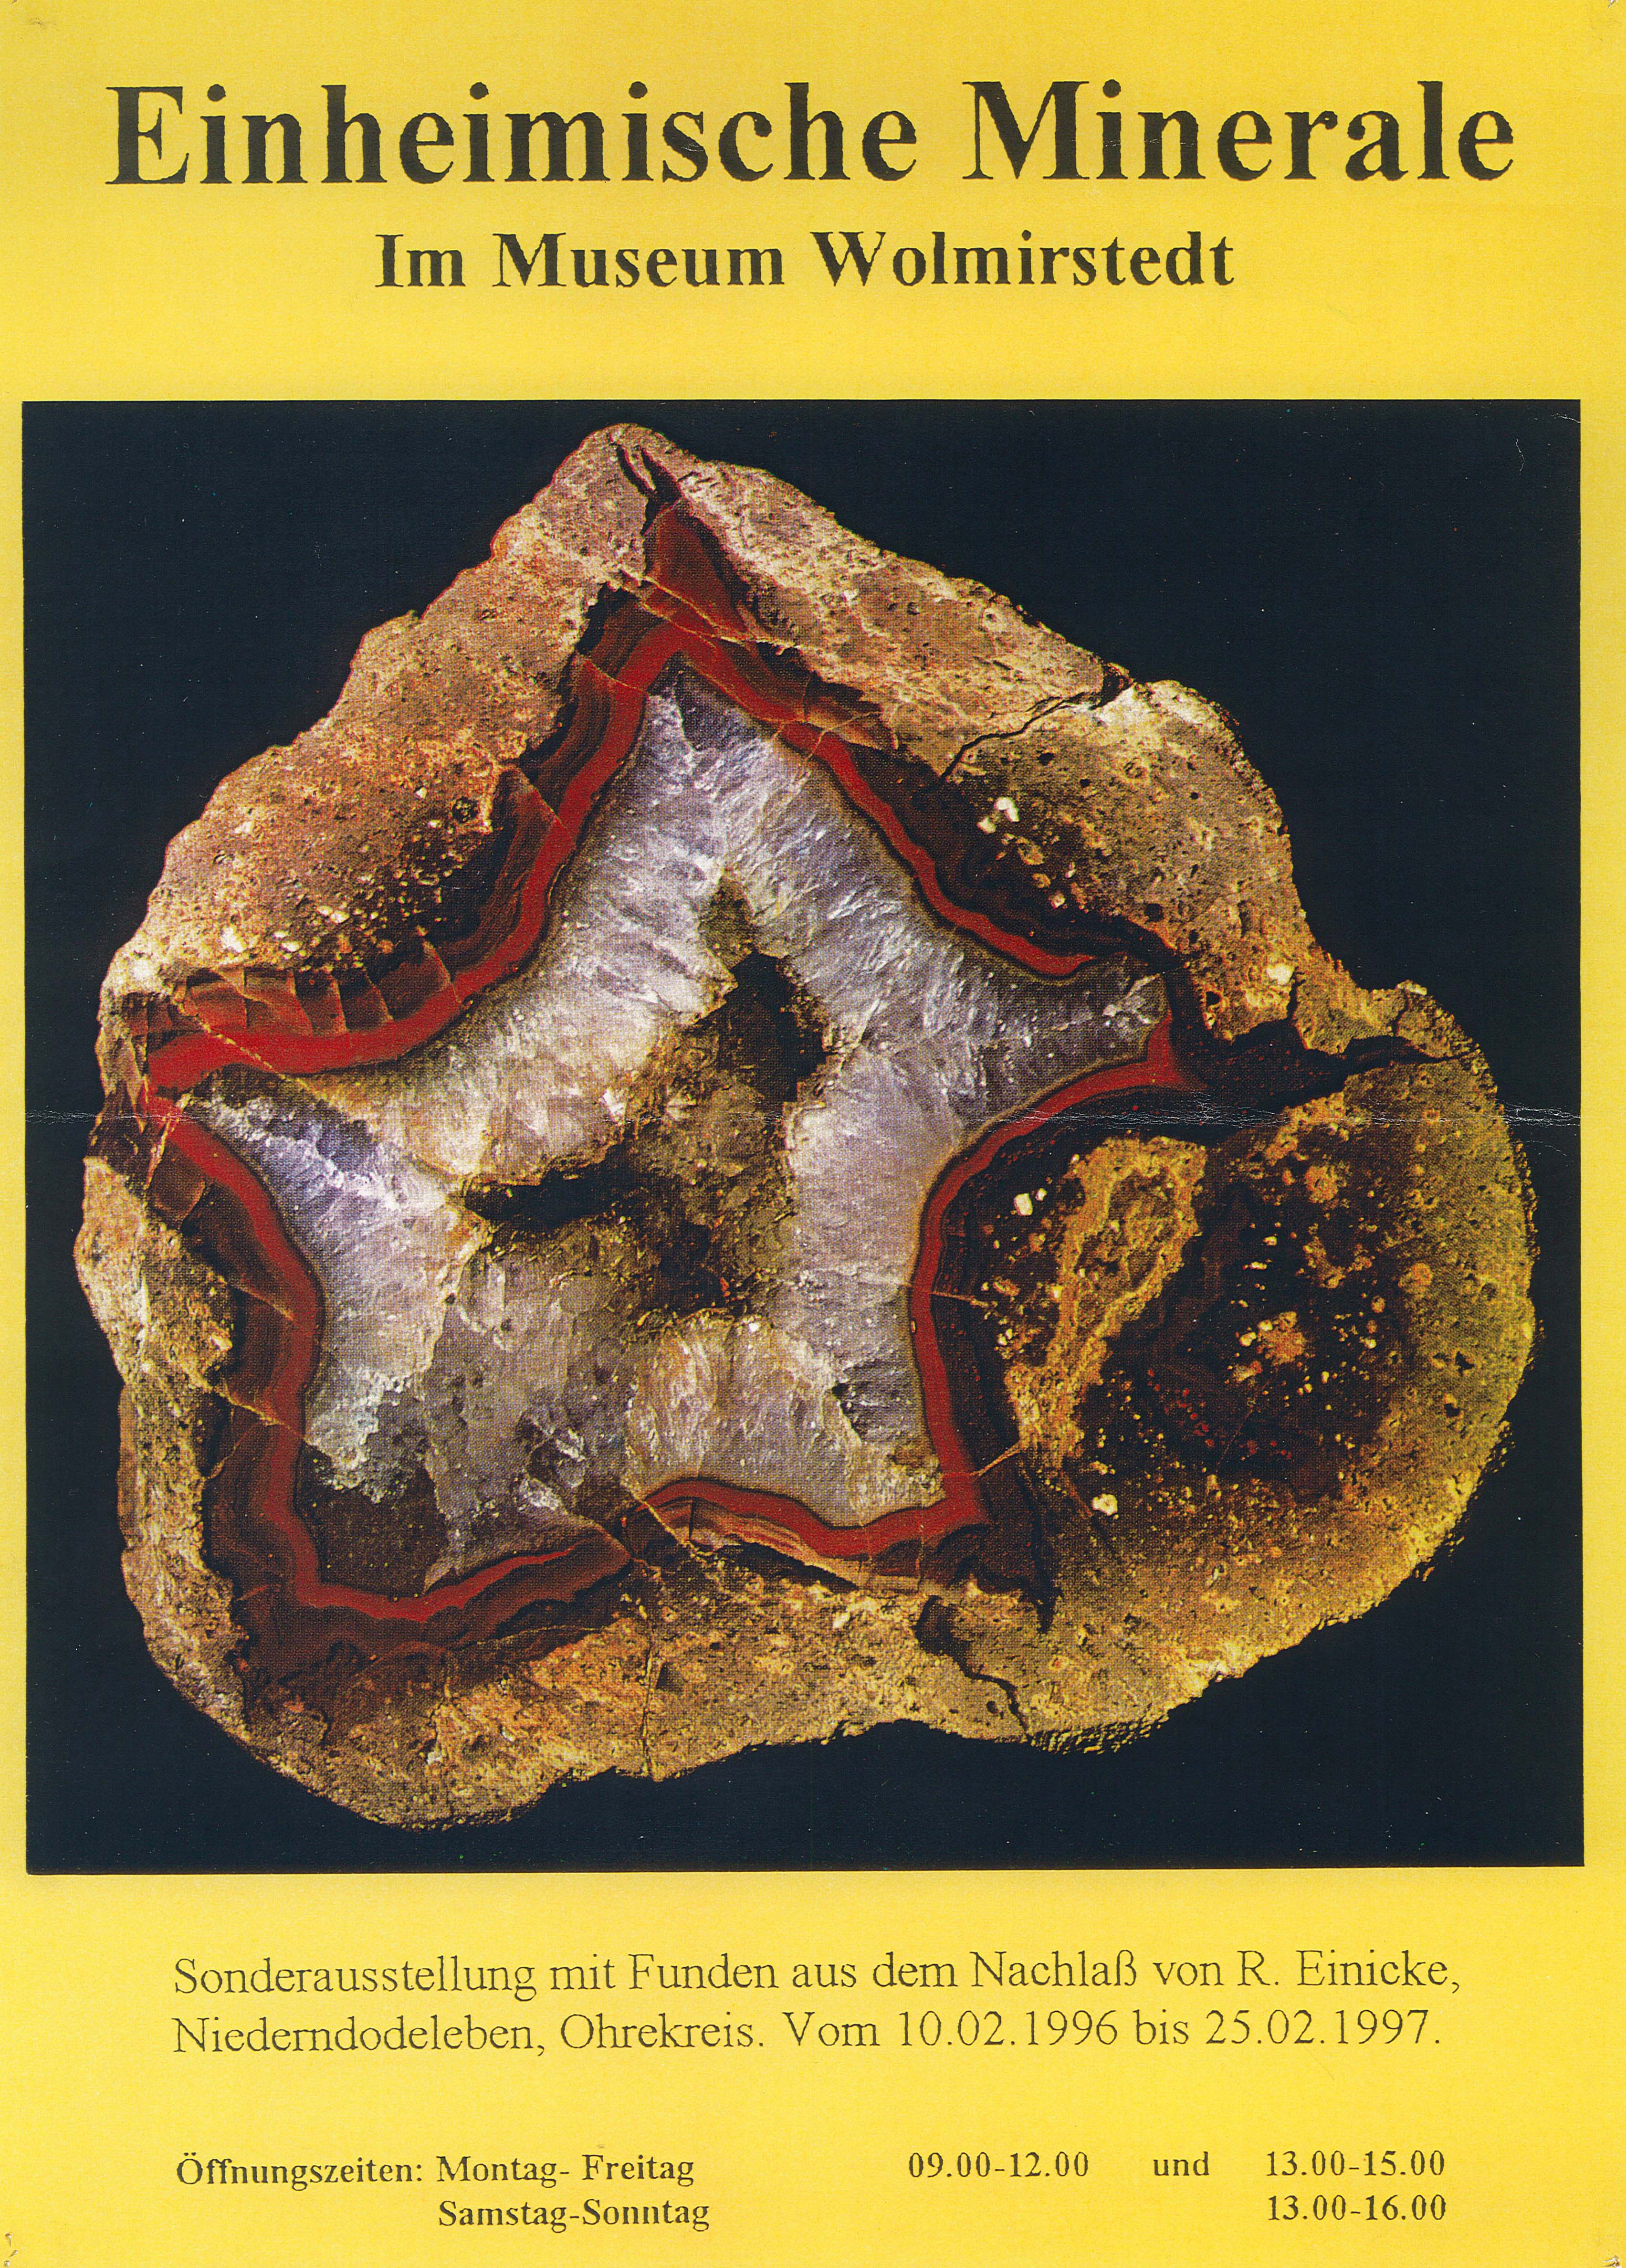 Ausstellungsplakat Sonderausstellung "Einheimische Minerale" (Museum Wolmirstedt RR-F)